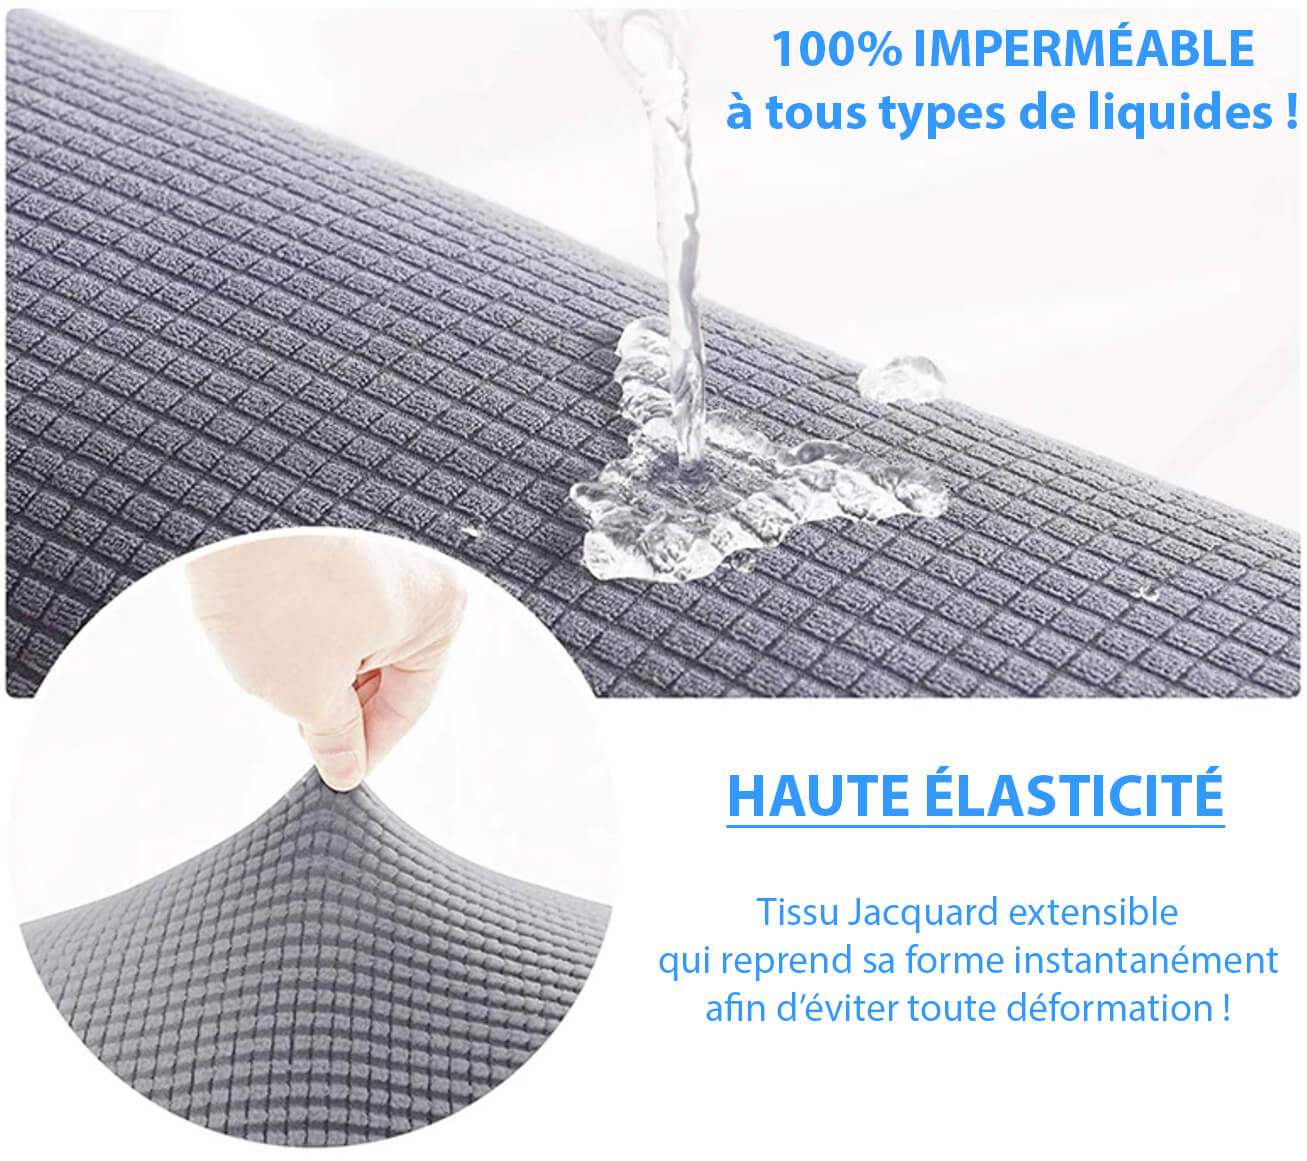 Protection etanche Housse de chaise impermeable tissu jacquard extensible